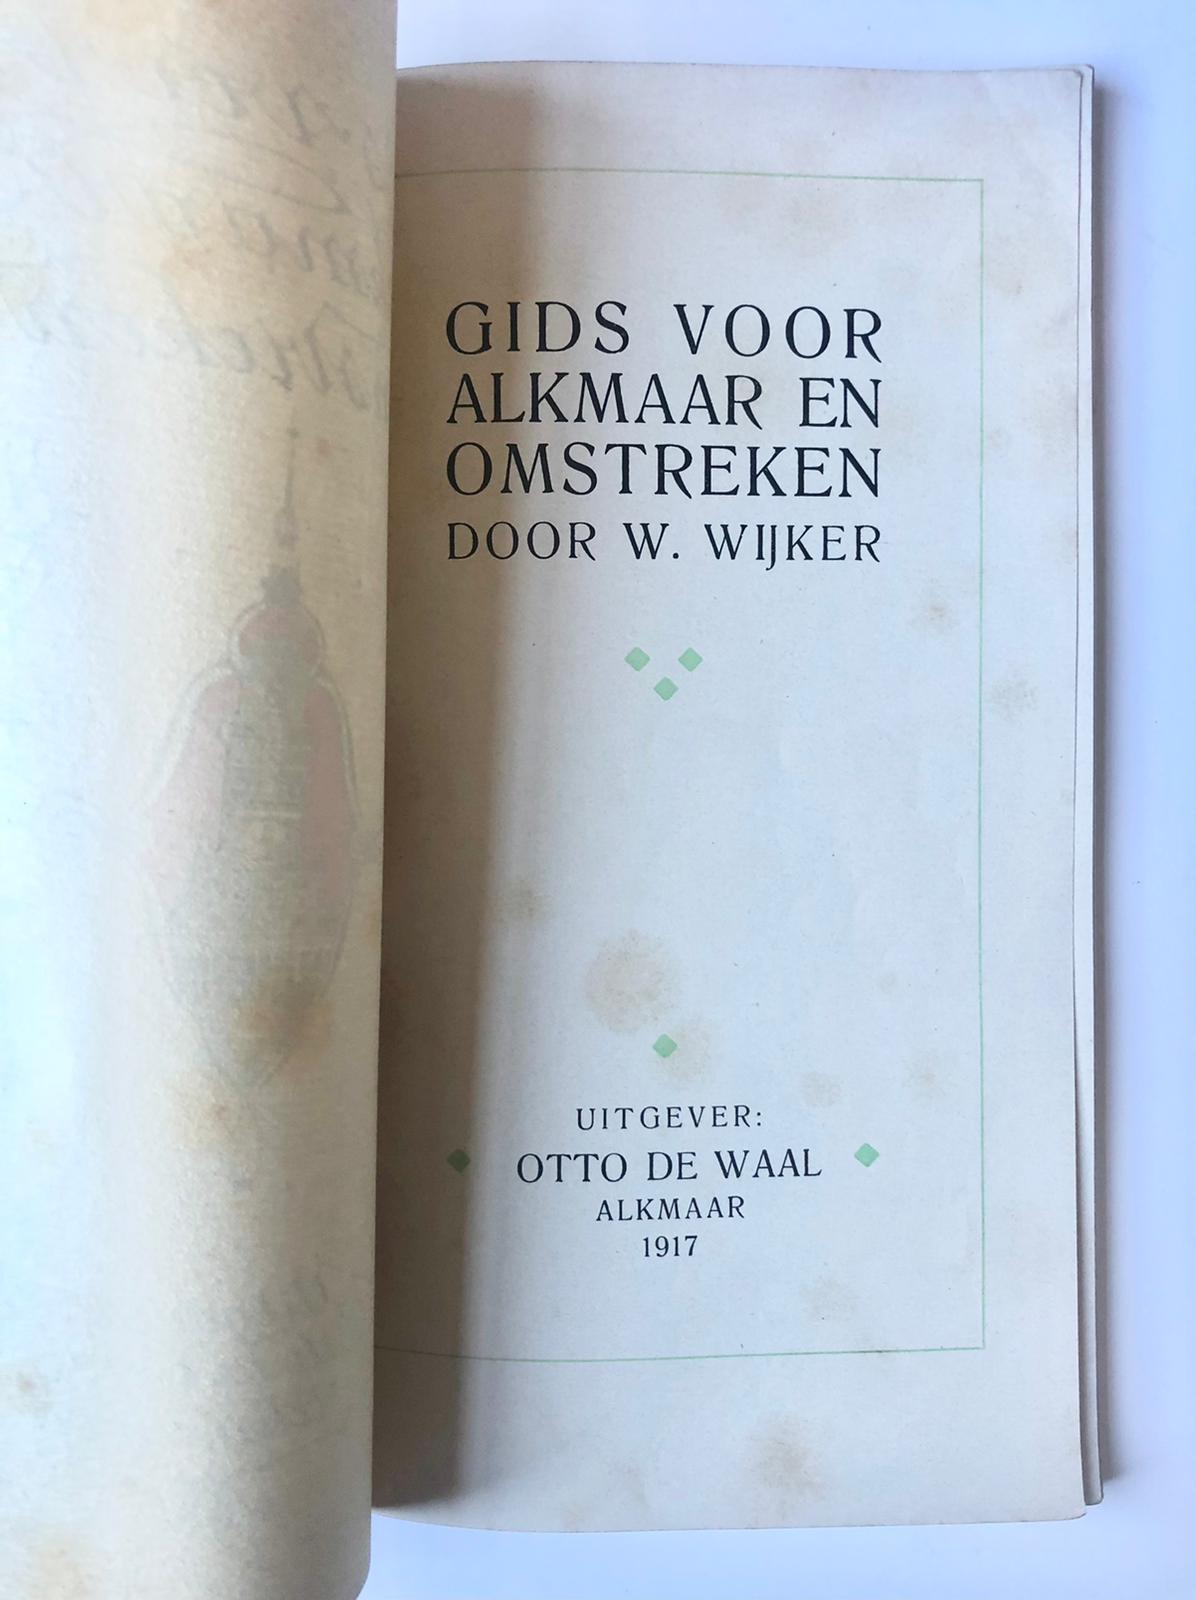 [Alkmaar, Noord-Holland] Gids voor Alkmaar & Omstreken, Door W. Wijker, Uitgevers Otto de Waal, Alkmaar, 1917, 80 pp.